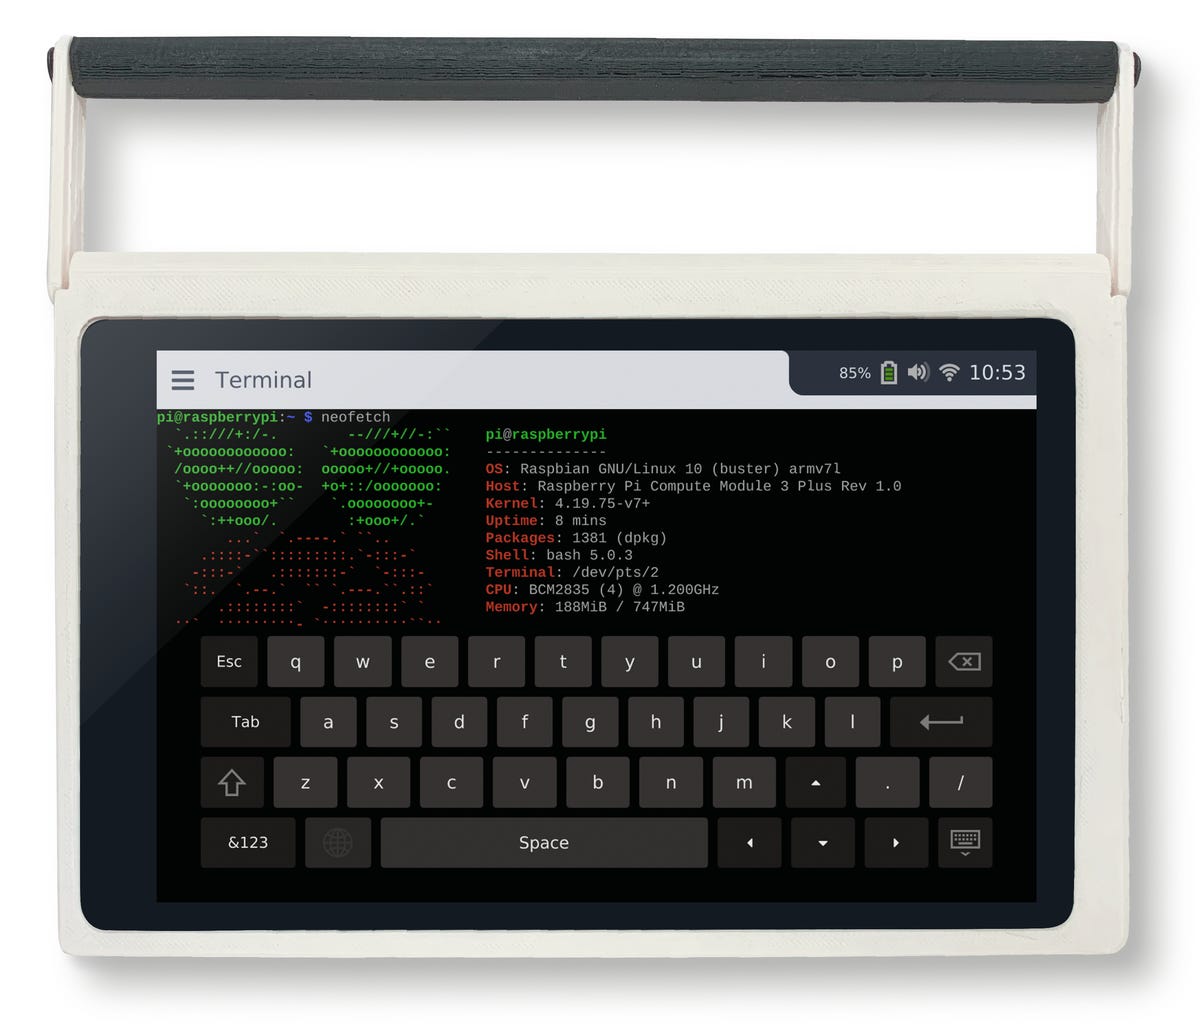 Cutiepi Raspberry Pi Tablet Surpasses Kickstarter Crowdfunding Goal Zdnet